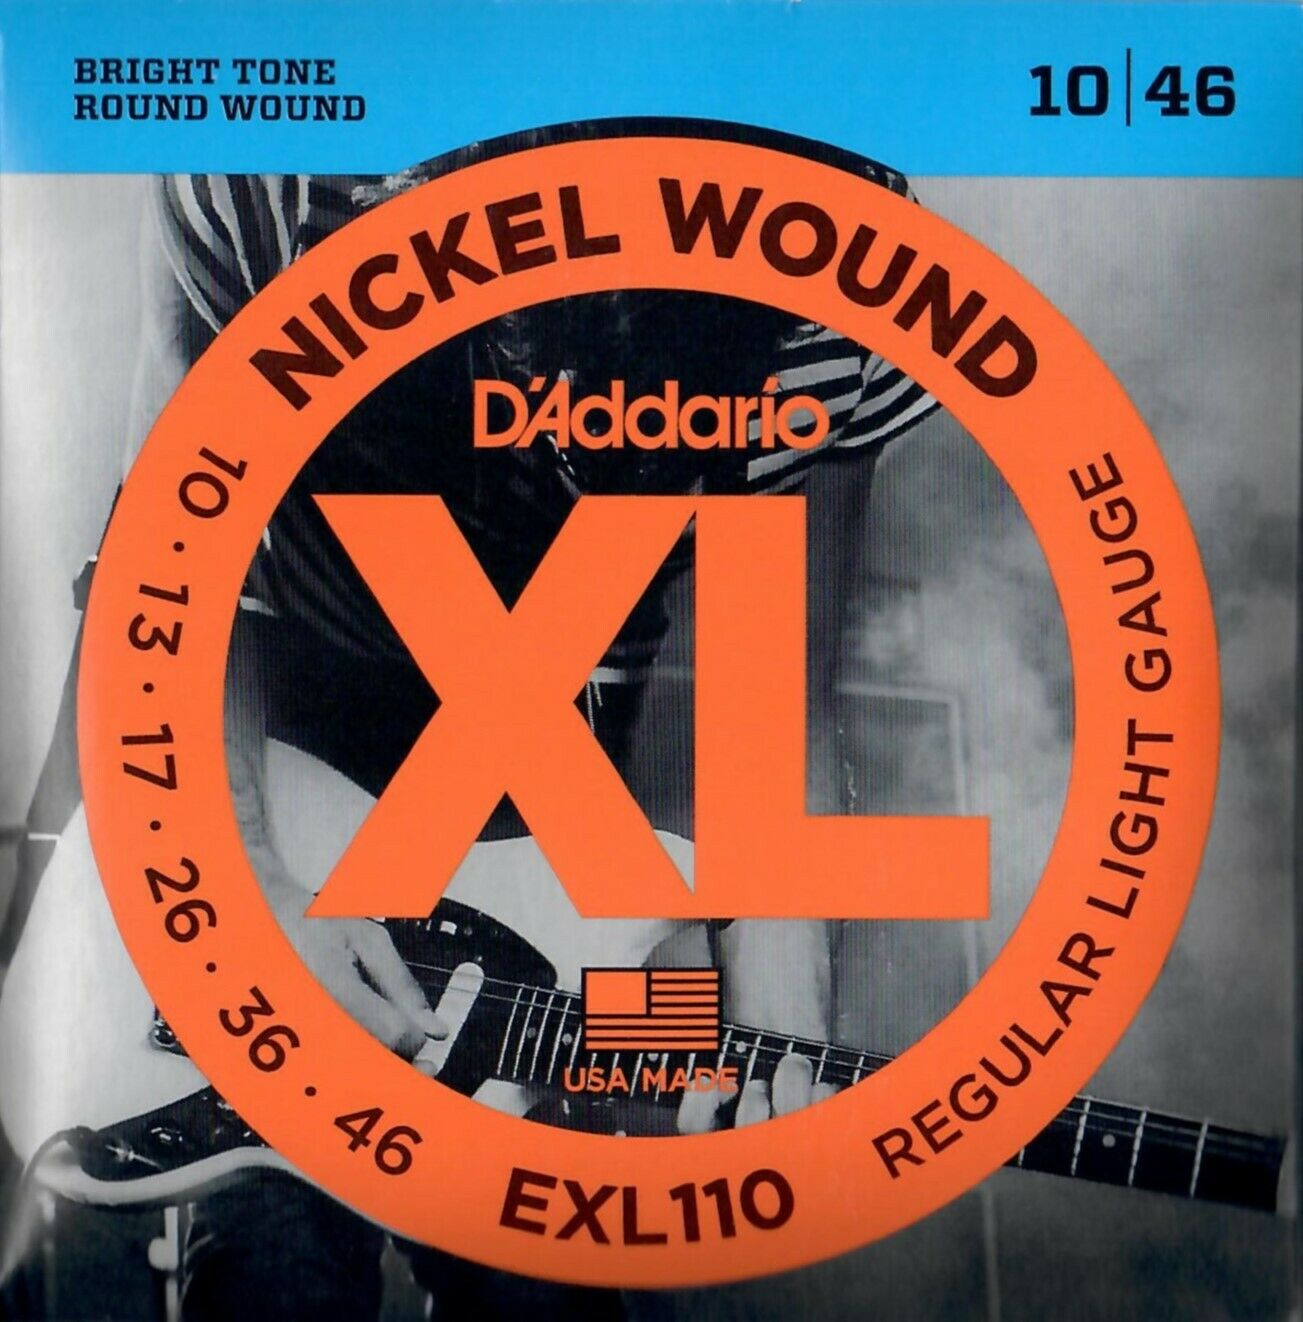 D'addario EXL110 Light Satz Saiten für E-Gitarre Nickel Wound